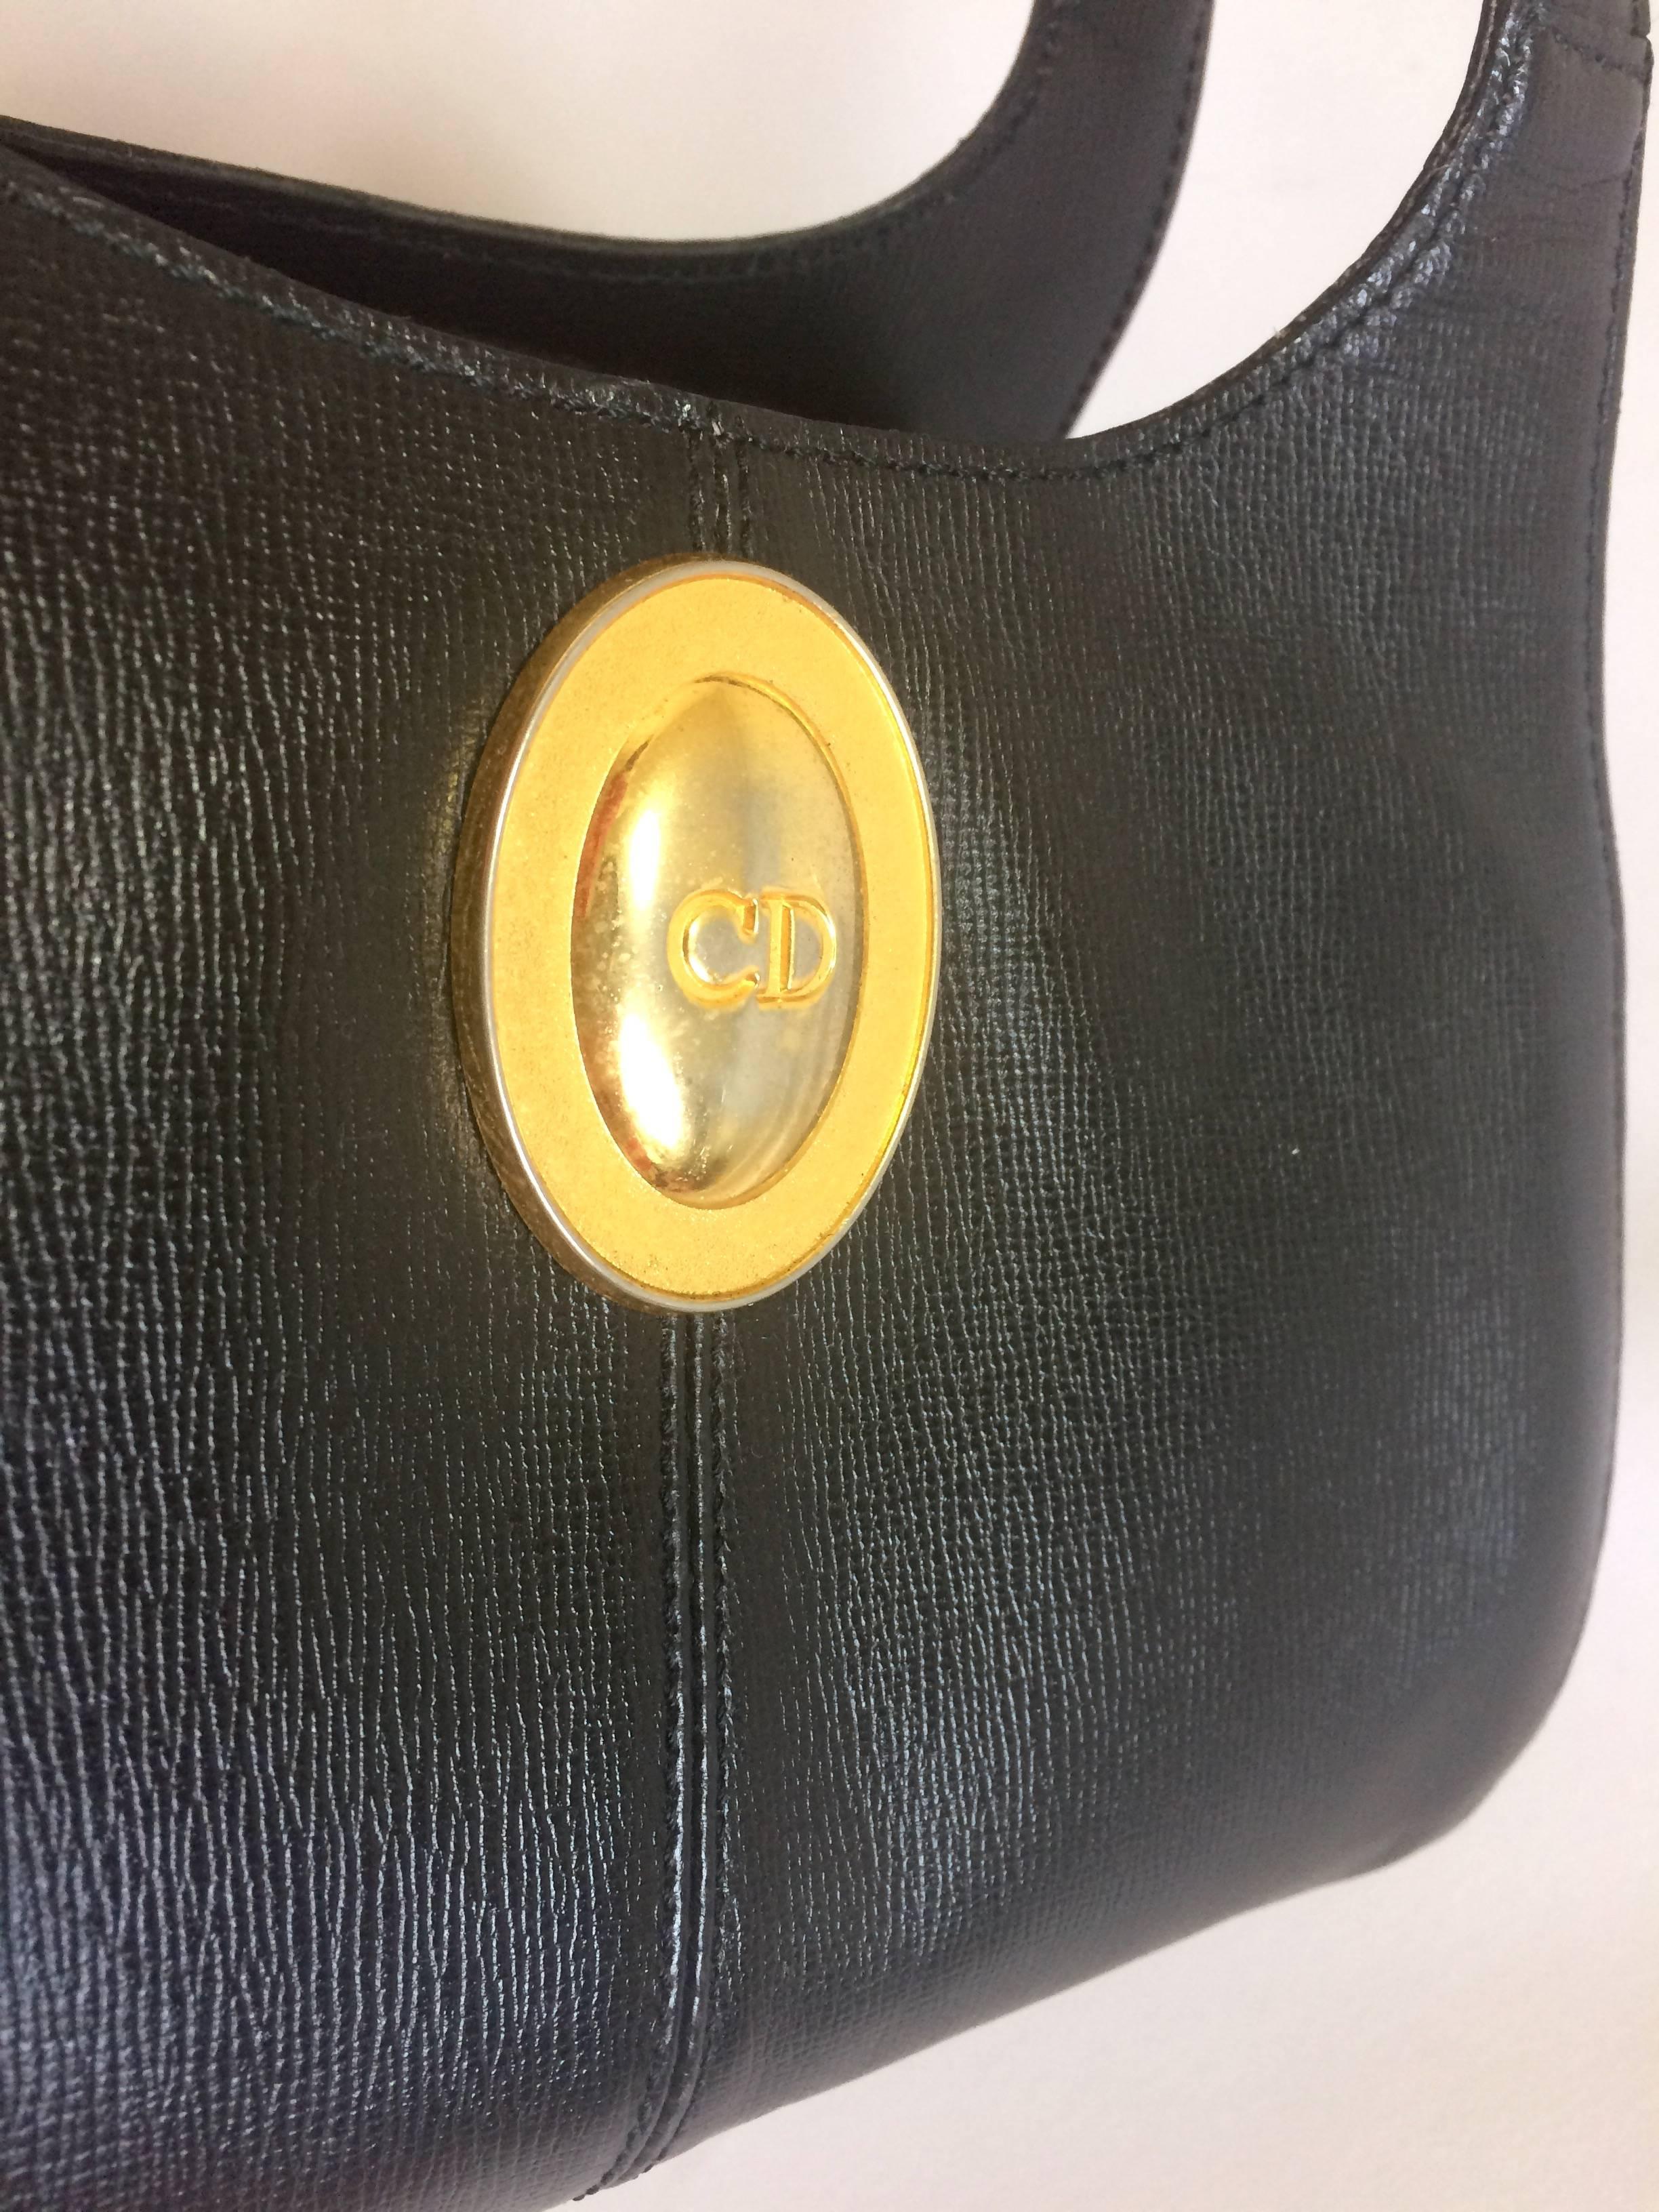 Black Vintage Christian Dior grained black leather handbag with oval golden CD logo.  For Sale